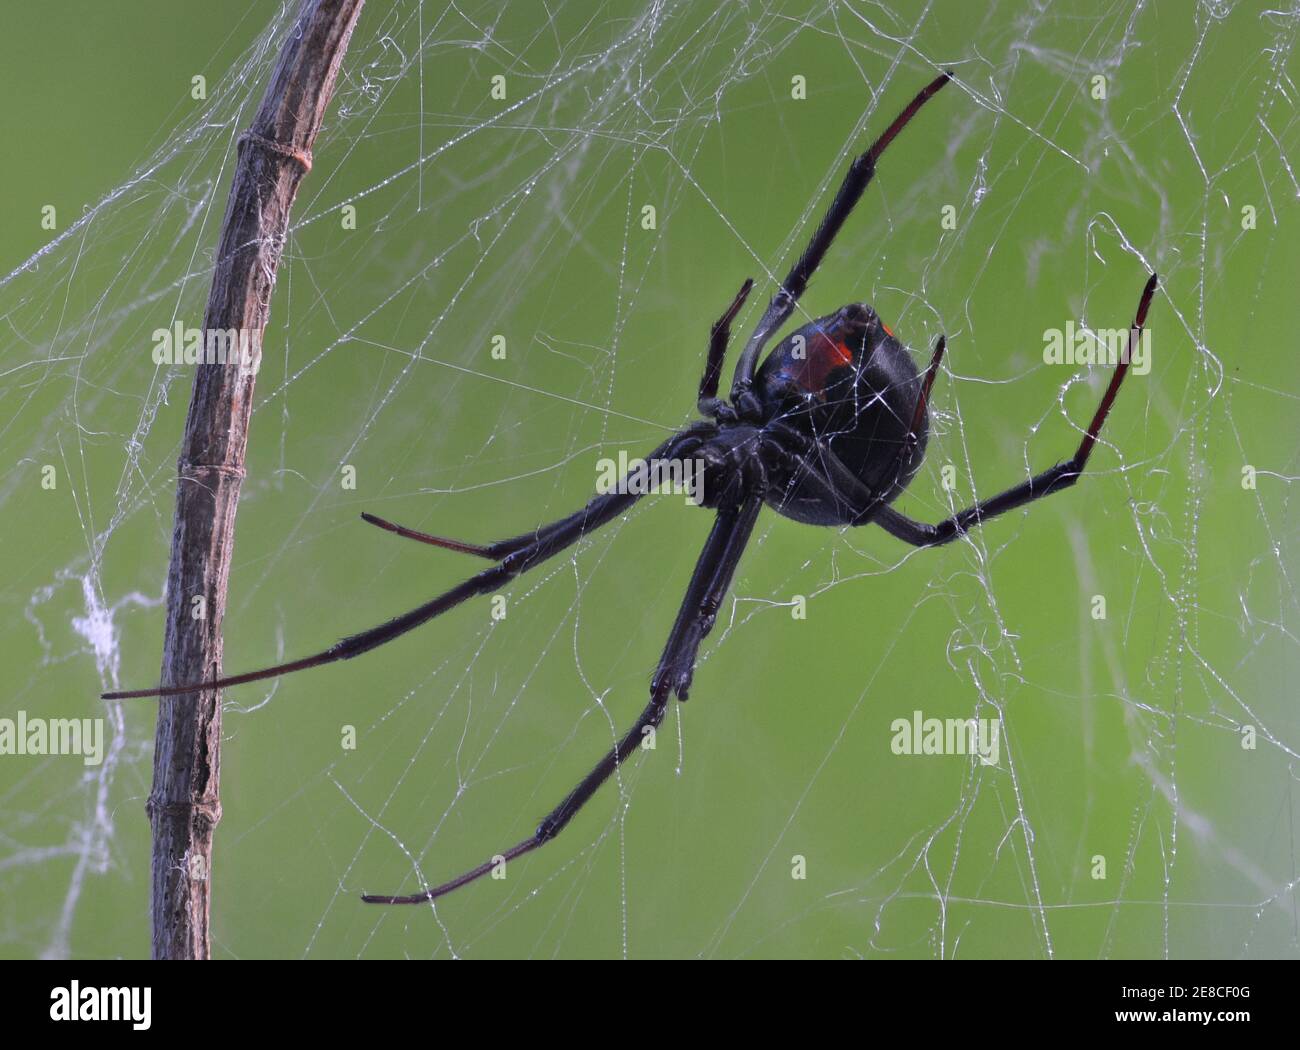 Araignée noire wido (dos rouge) sur la toile dans l'environnement naturel Banque D'Images